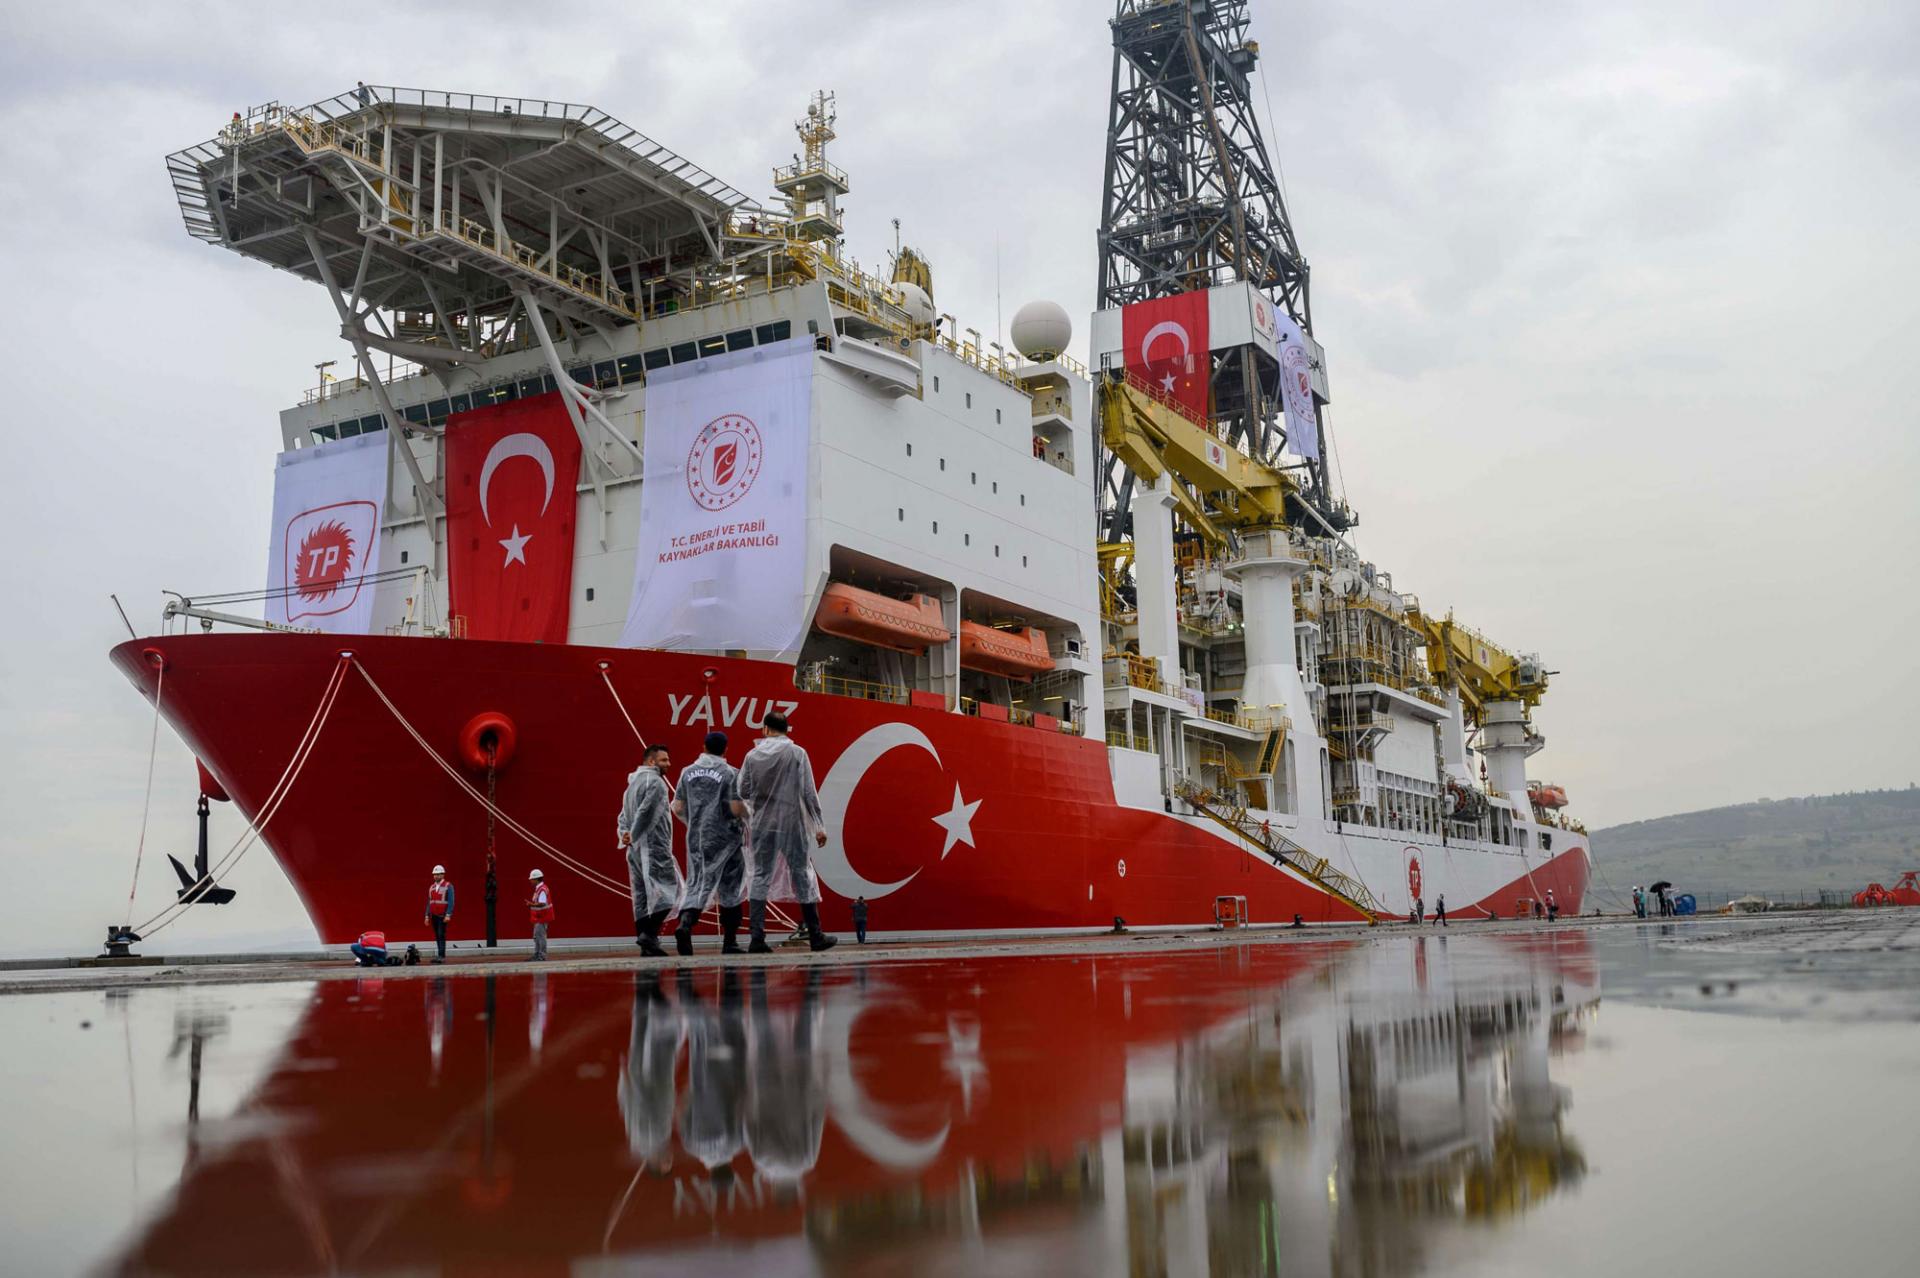 سفينة تنقيب تركية